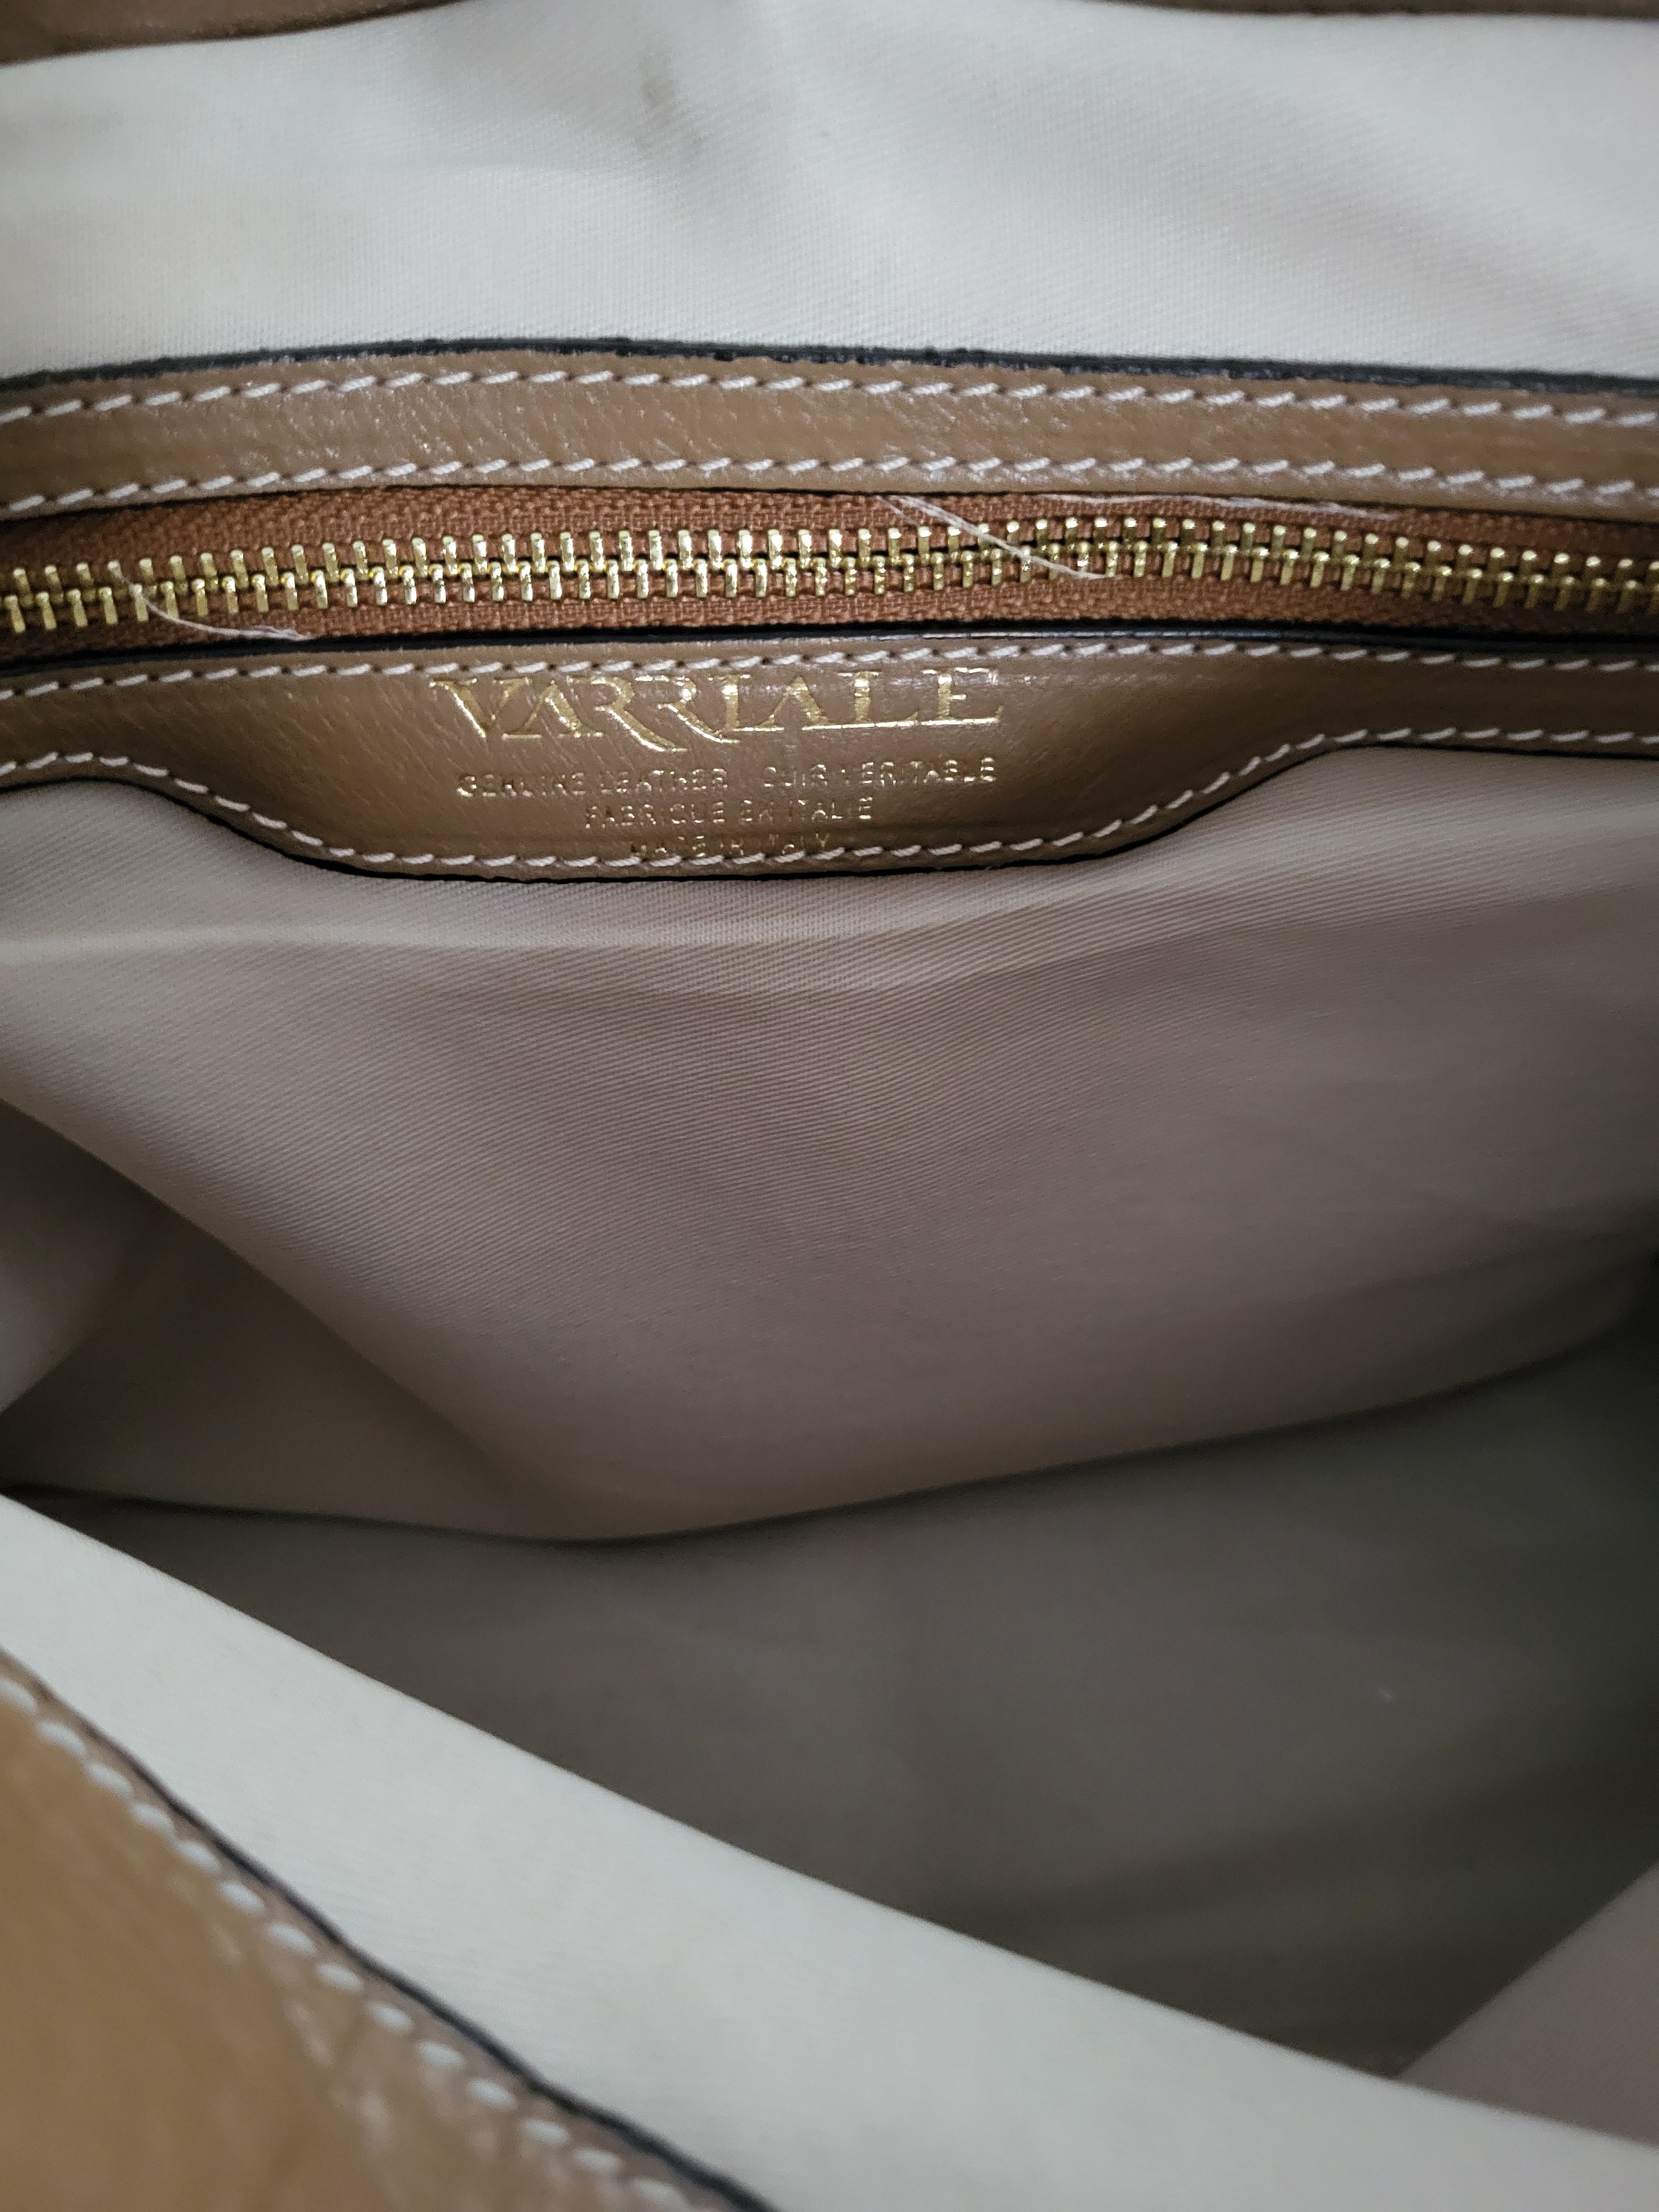 Varriale Brown Leather Top Handle/Shoulder Bag